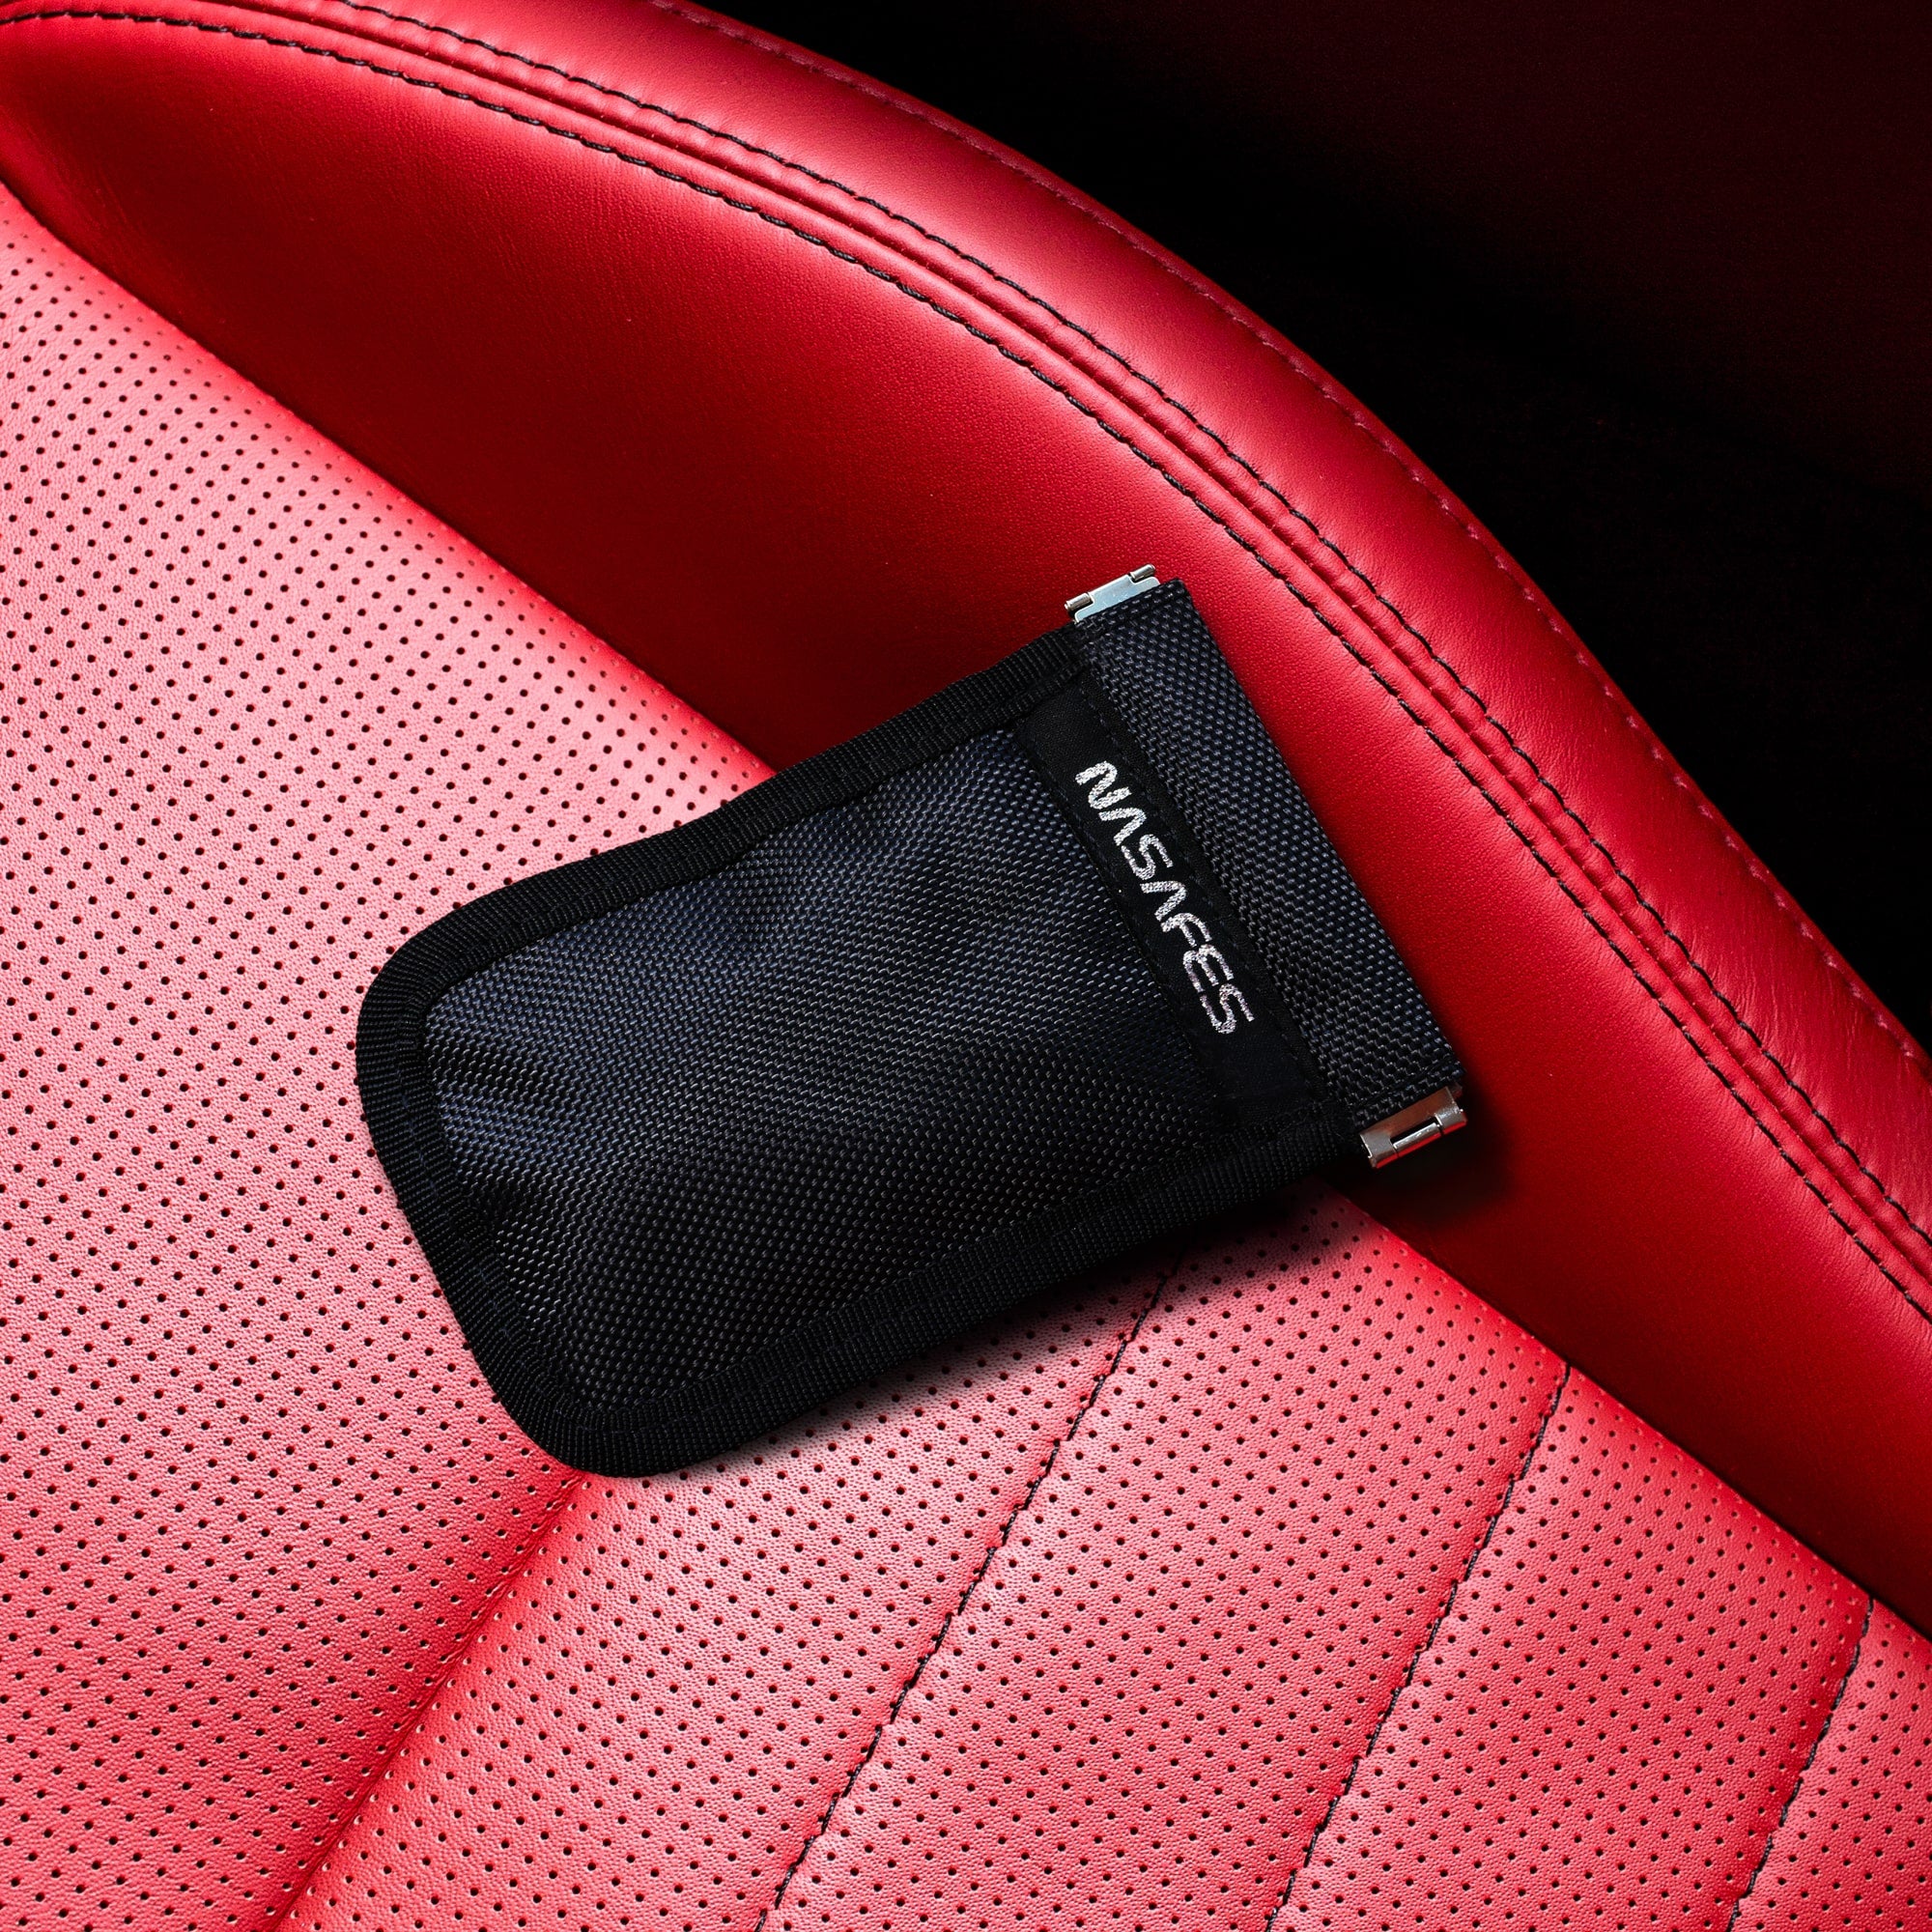 Nasafes Abschirmtasche auf einem roten Autoledersitz